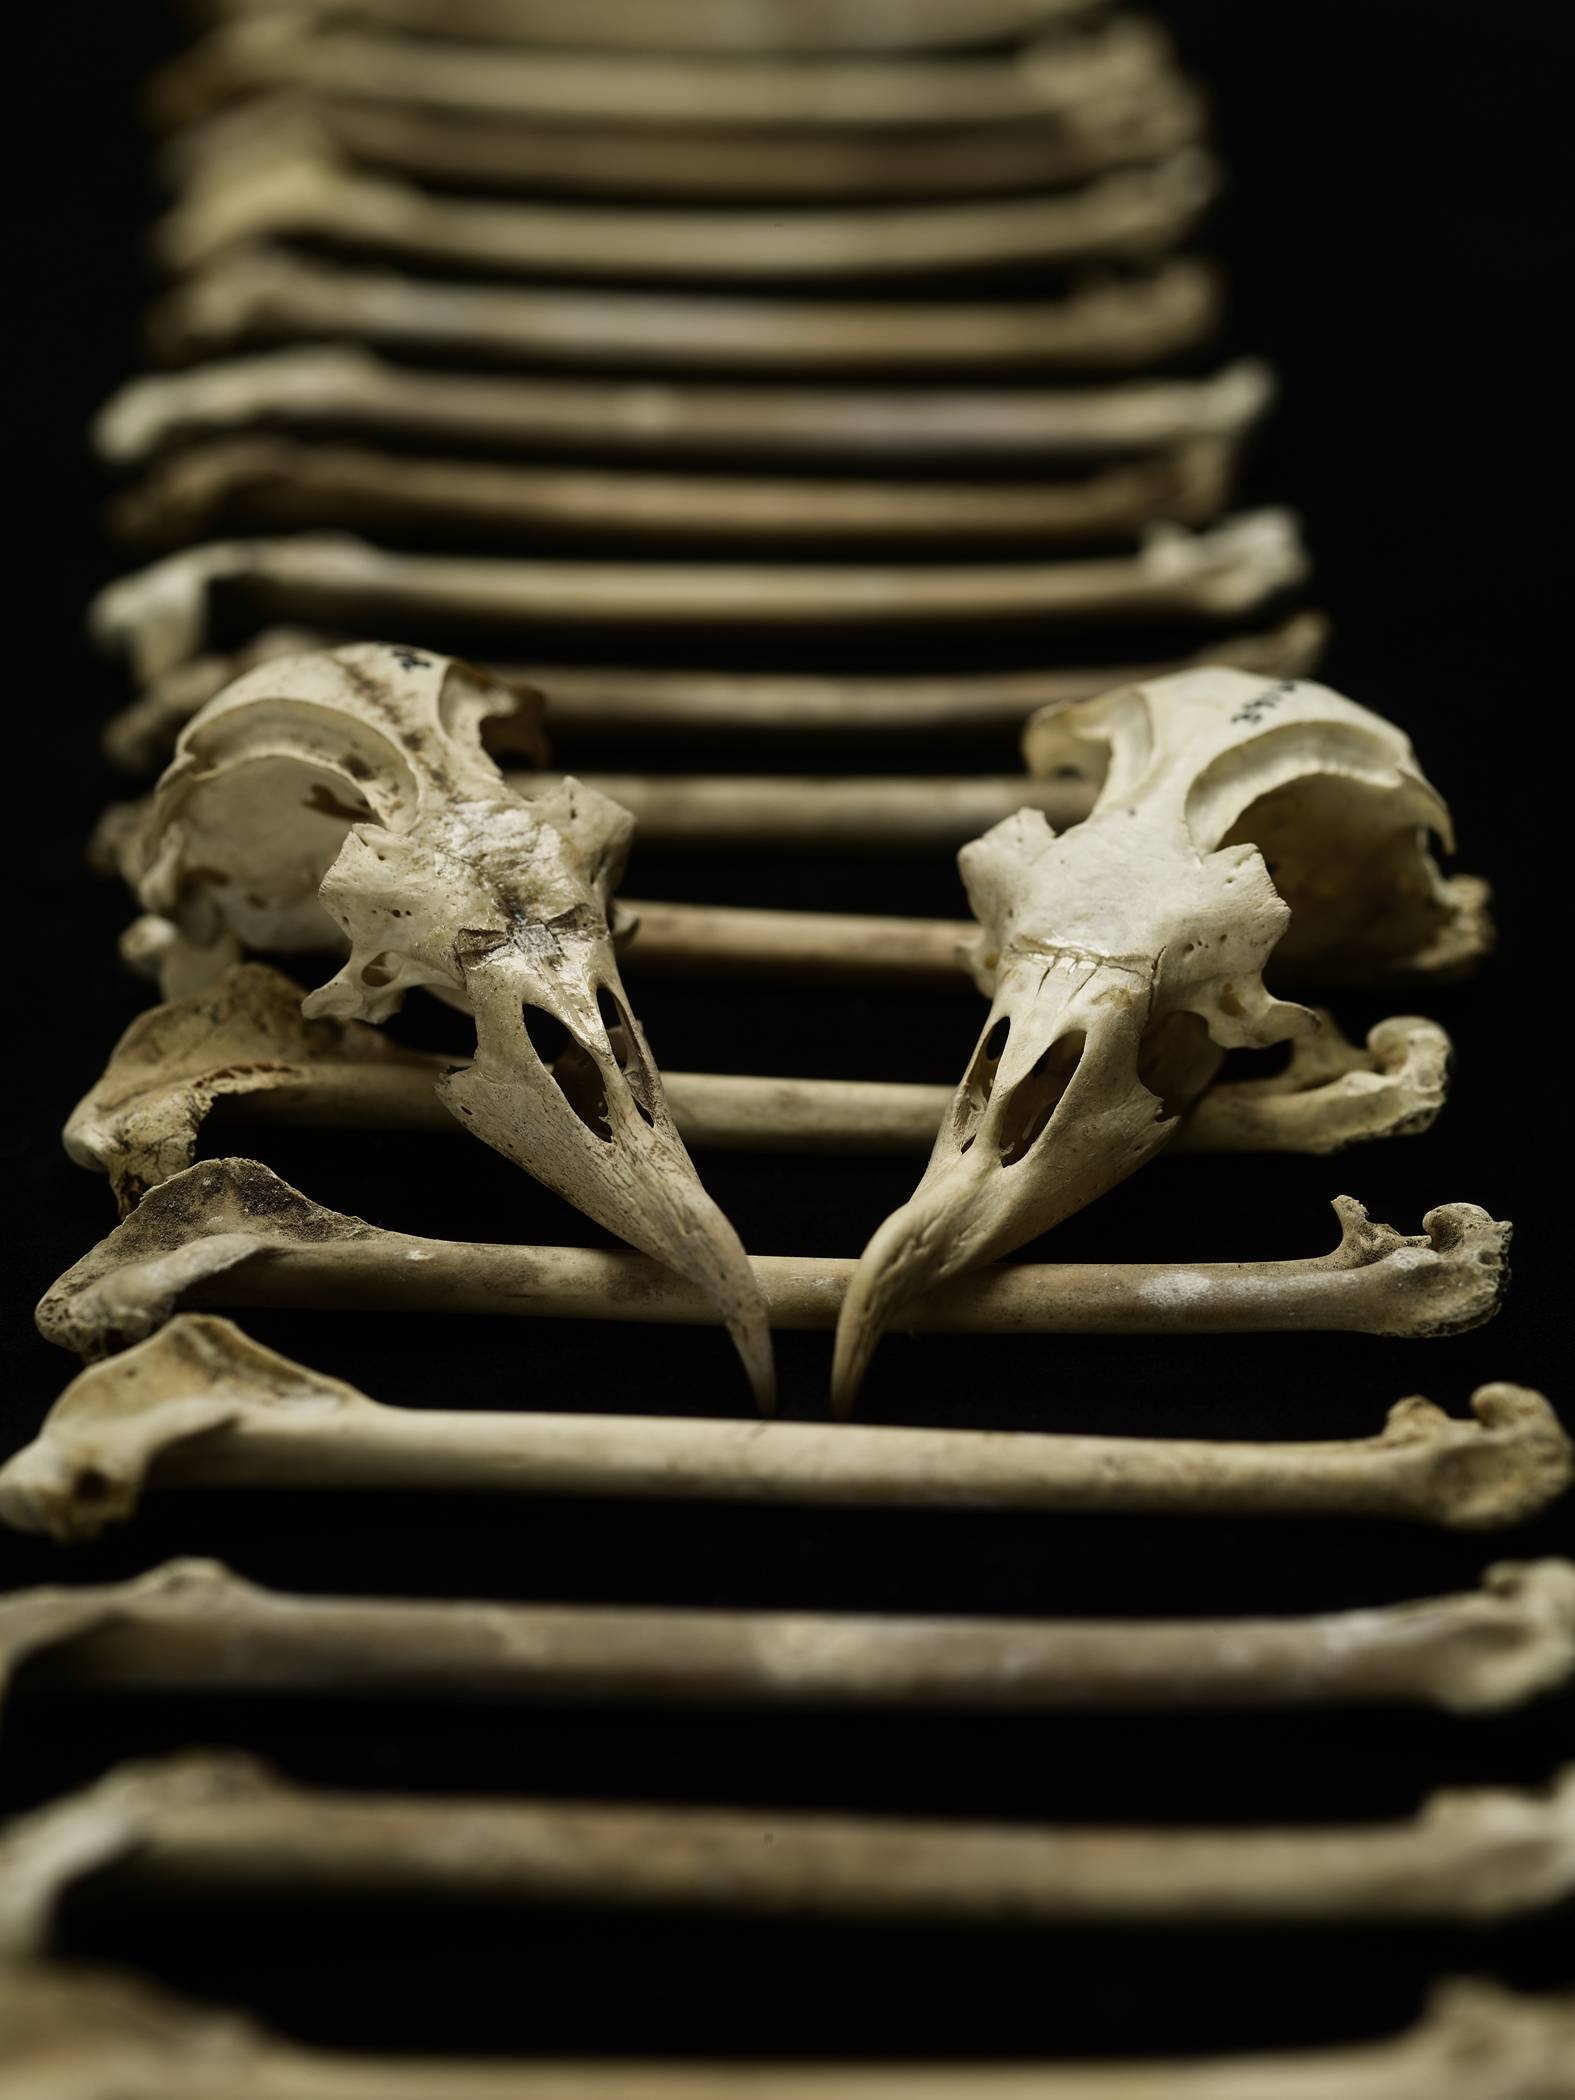 Des chercheurs ont récolté 17.000 ossements de pétrels des Hawaï et ont étudié leur composition chimique. Ils ont ainsi pu déterminer l'évolution du régime alimentaire de ces oiseaux marins sur 4.000 ans d'histoire. © Brittany Hance